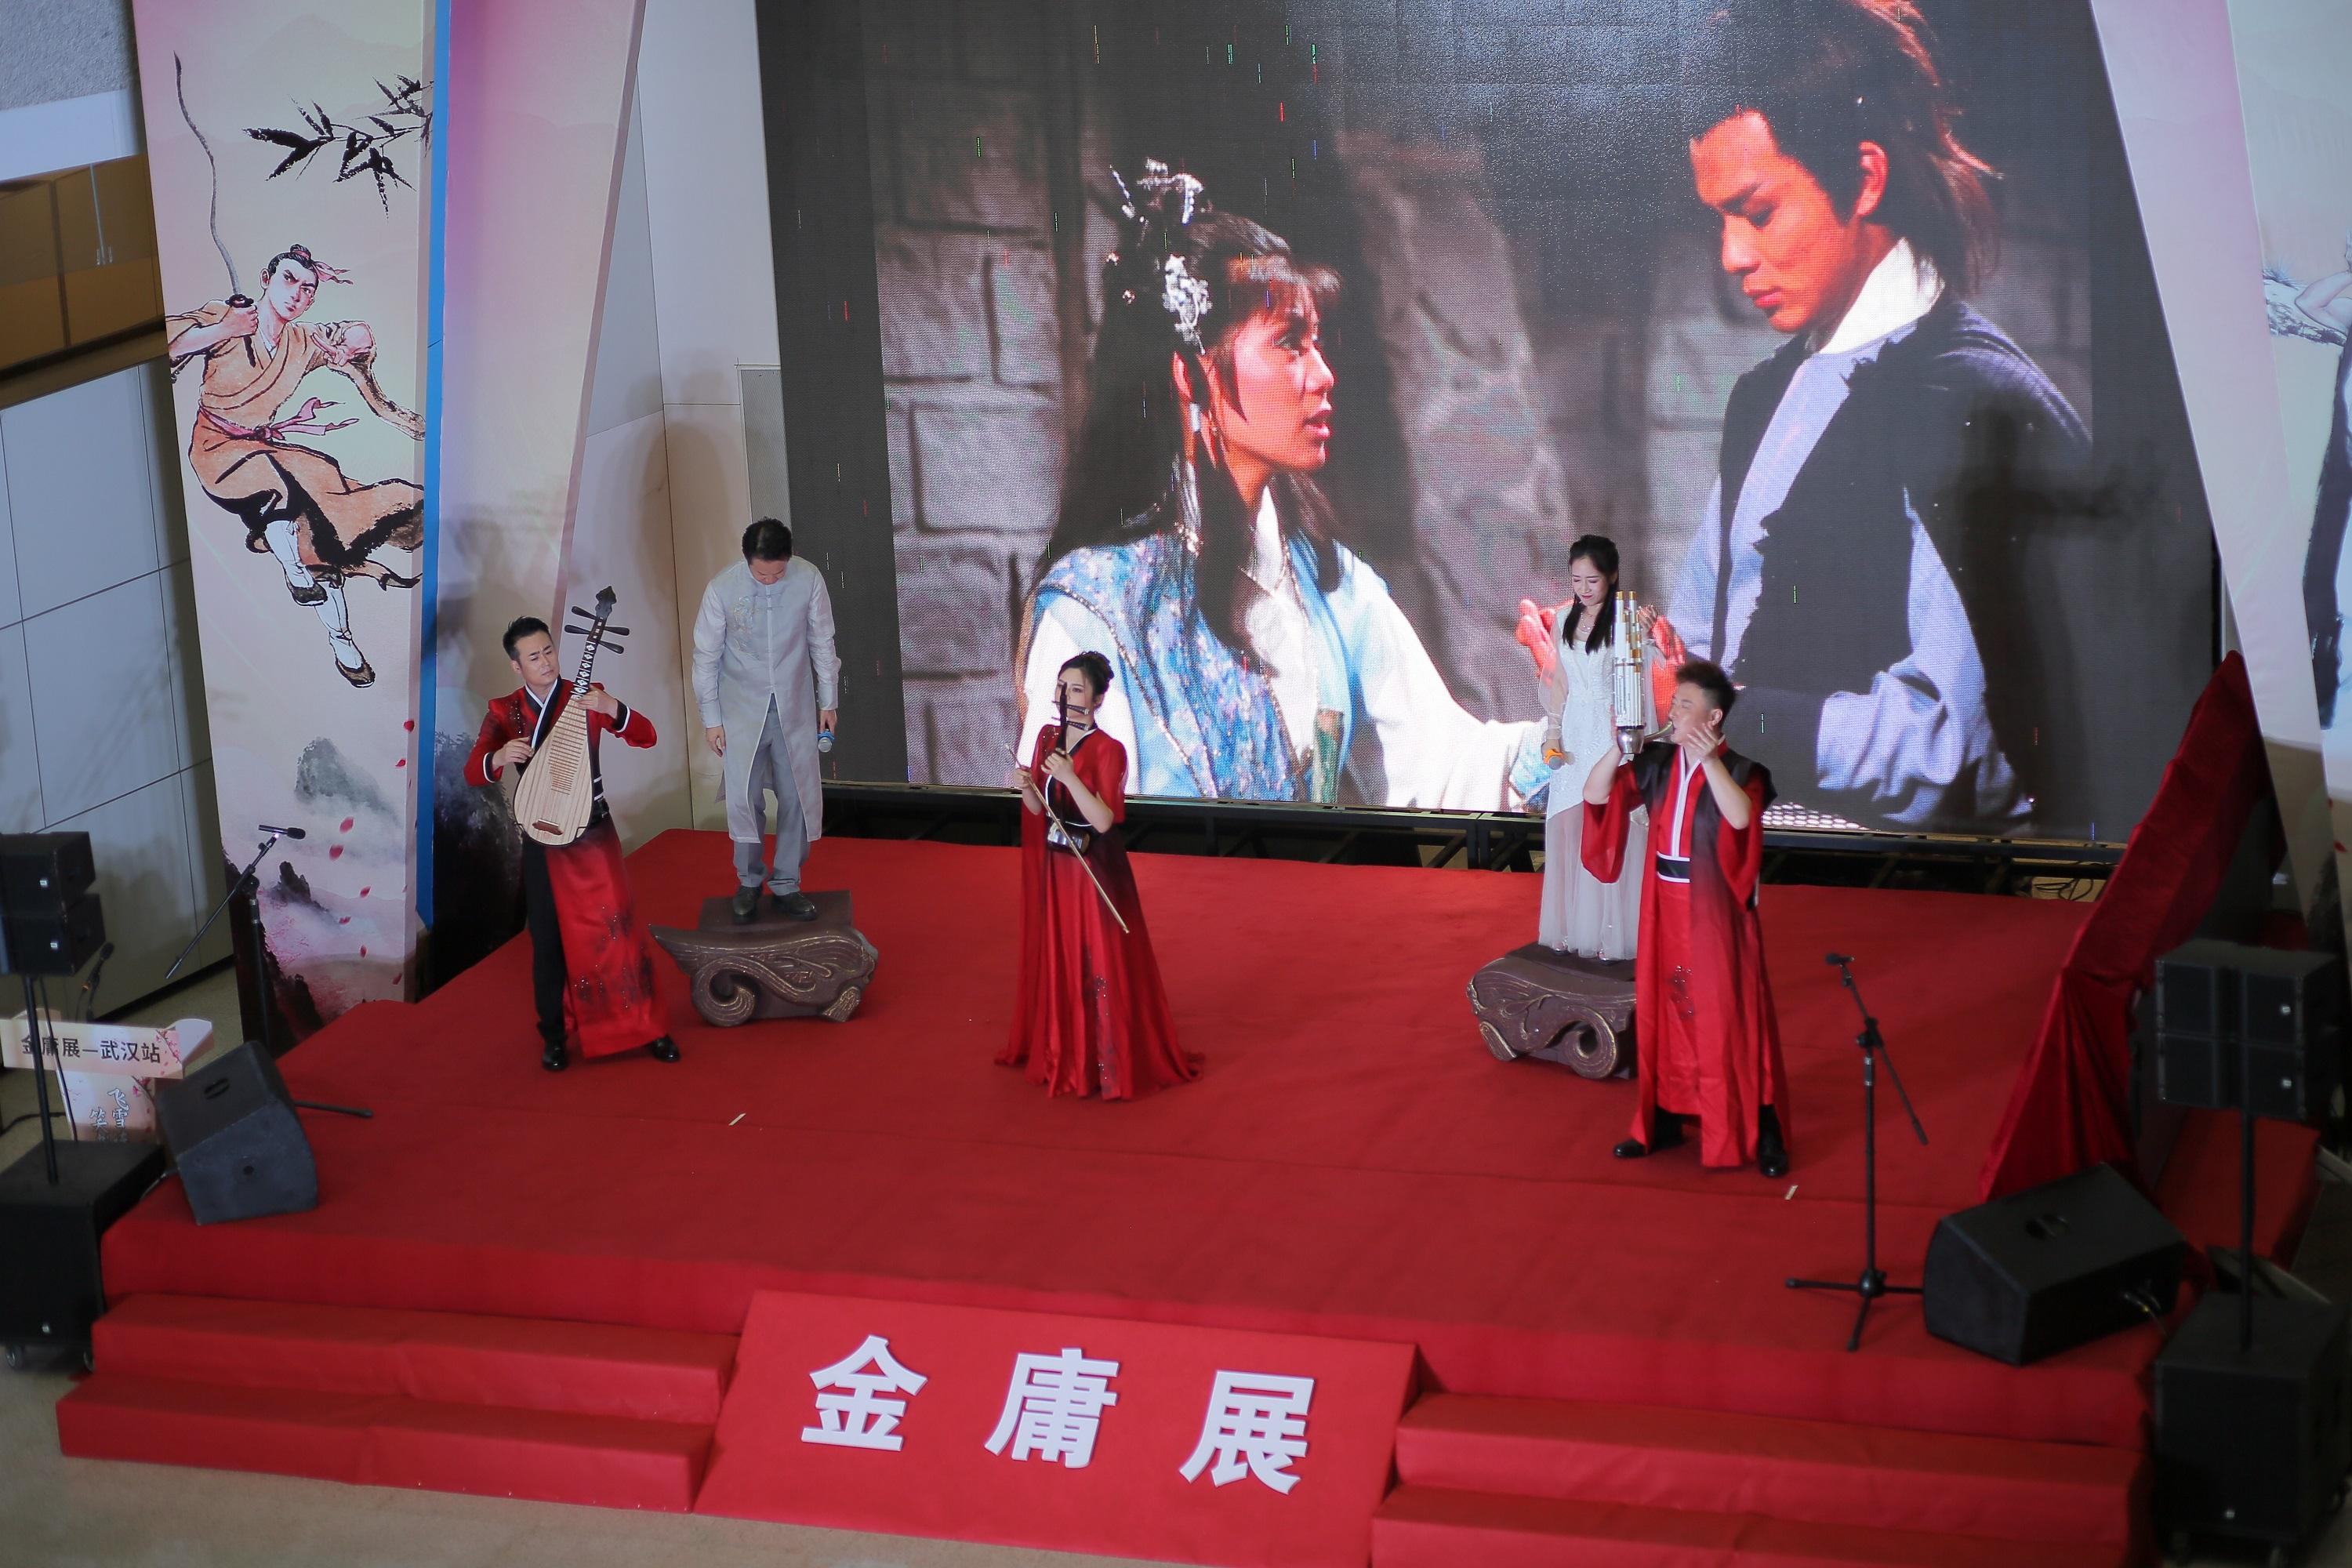 以著名報人、作家查良鏞博士（筆名金庸）為主題的展覽—「金庸展」今日（九月九日）在武漢湖北省圖書館正式揭幕。圖示開幕式中的歌唱表演。